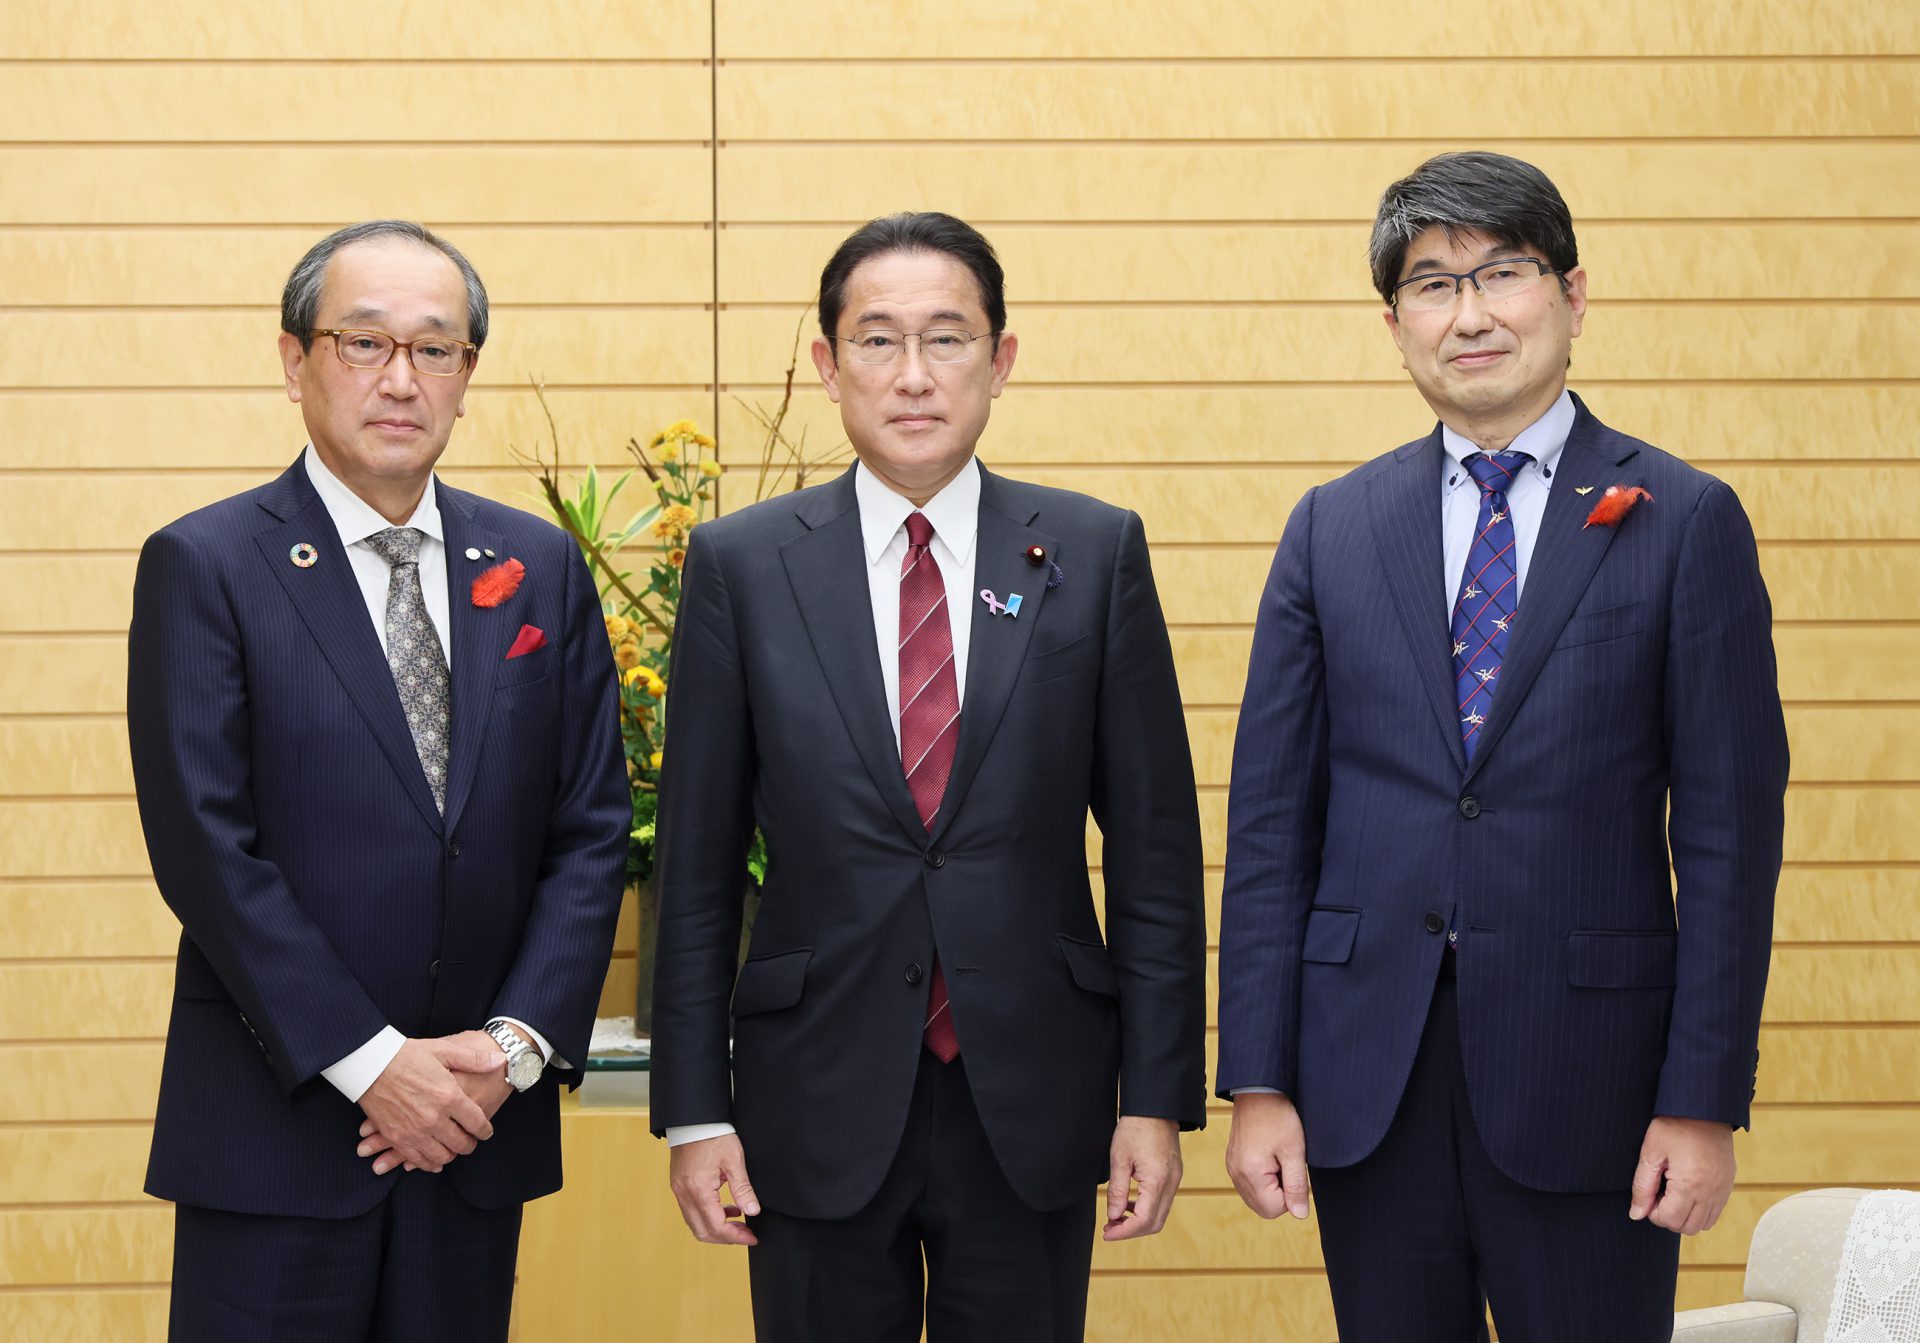 左から、松井広島市長、岸田総理大臣、田上長崎市長